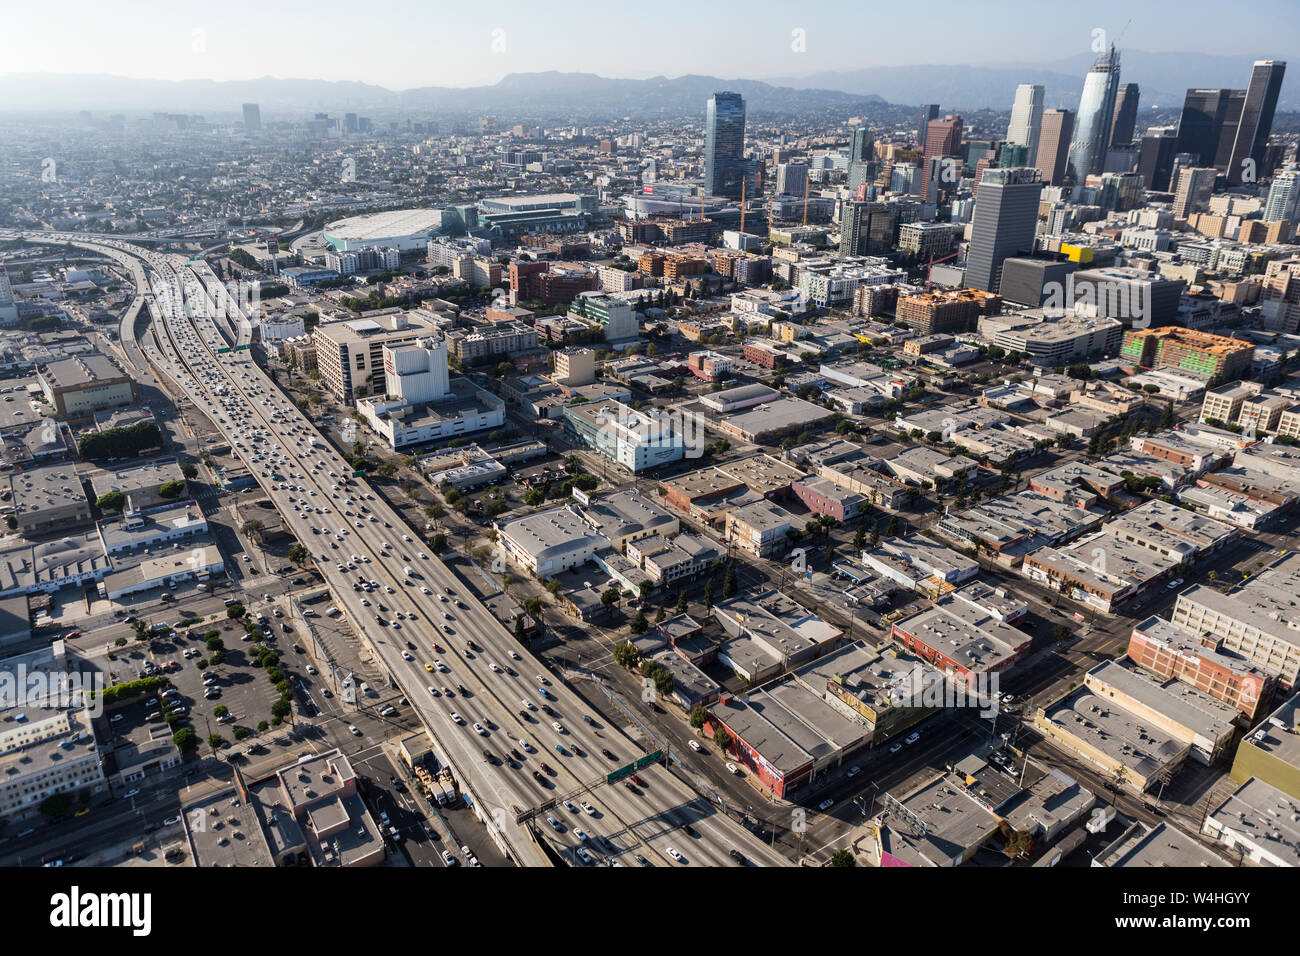 Los Angeles, Californie, USA - 6 août 2016 : Vue aérienne de la circulation sur l'autoroute Interstate 10 au sud du centre-ville de Los Angeles en Californie du Sud. Banque D'Images